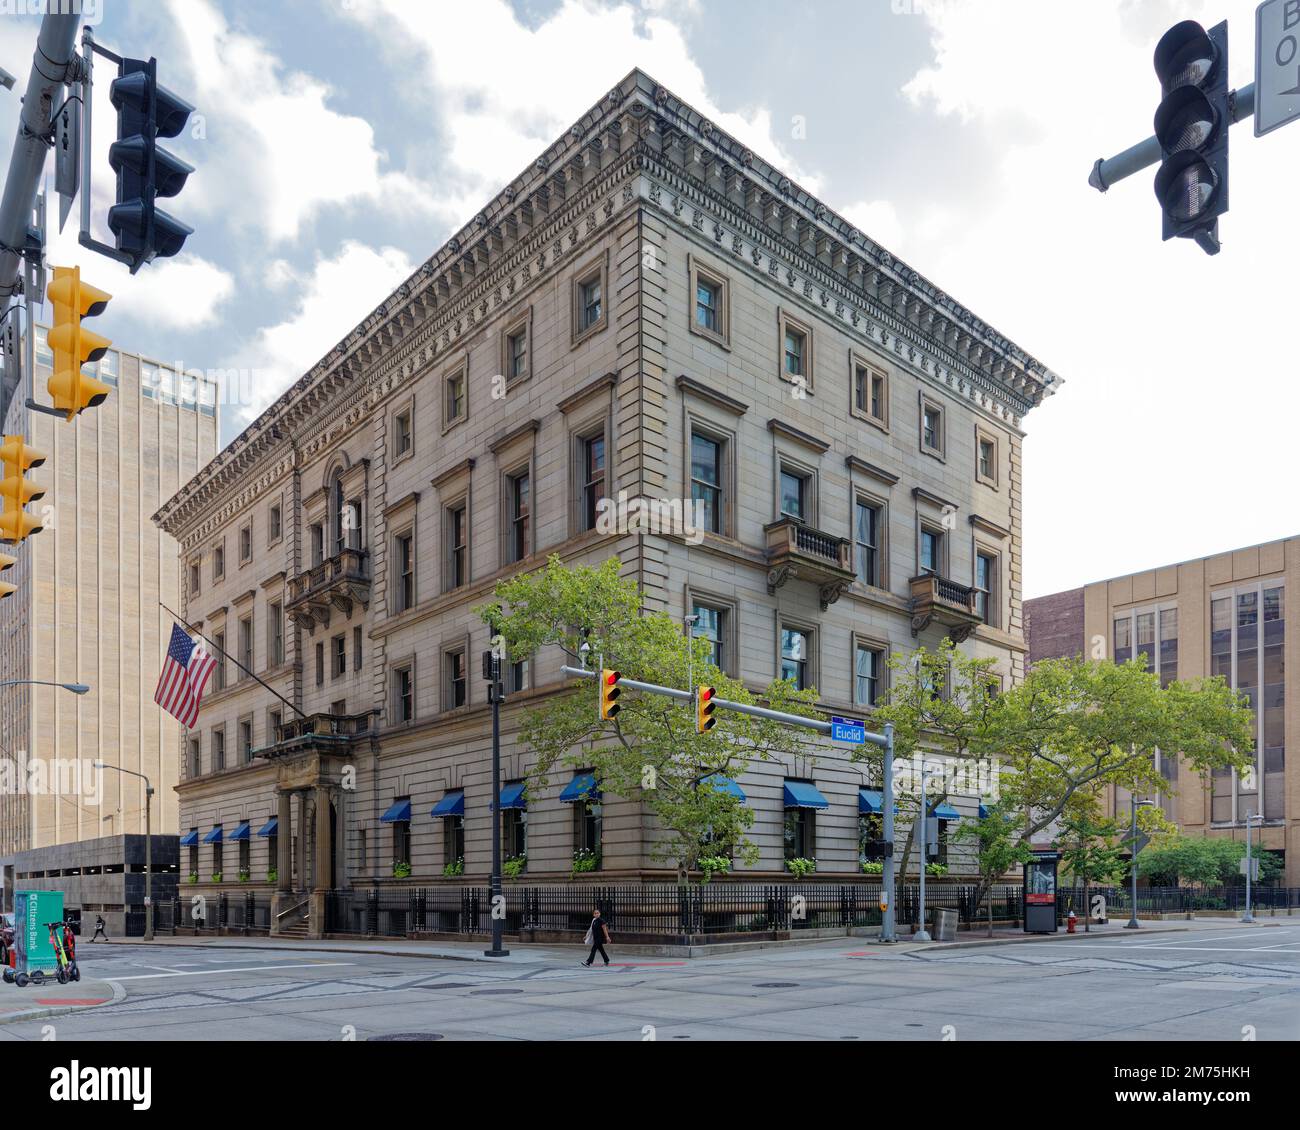 Union Club, un point de repère de style renaissance, a accueilli l'élite de Cleveland – dont cinq États-Unis Présidents : Grant, Hayes, Garfield, McKinley et Taft. Banque D'Images